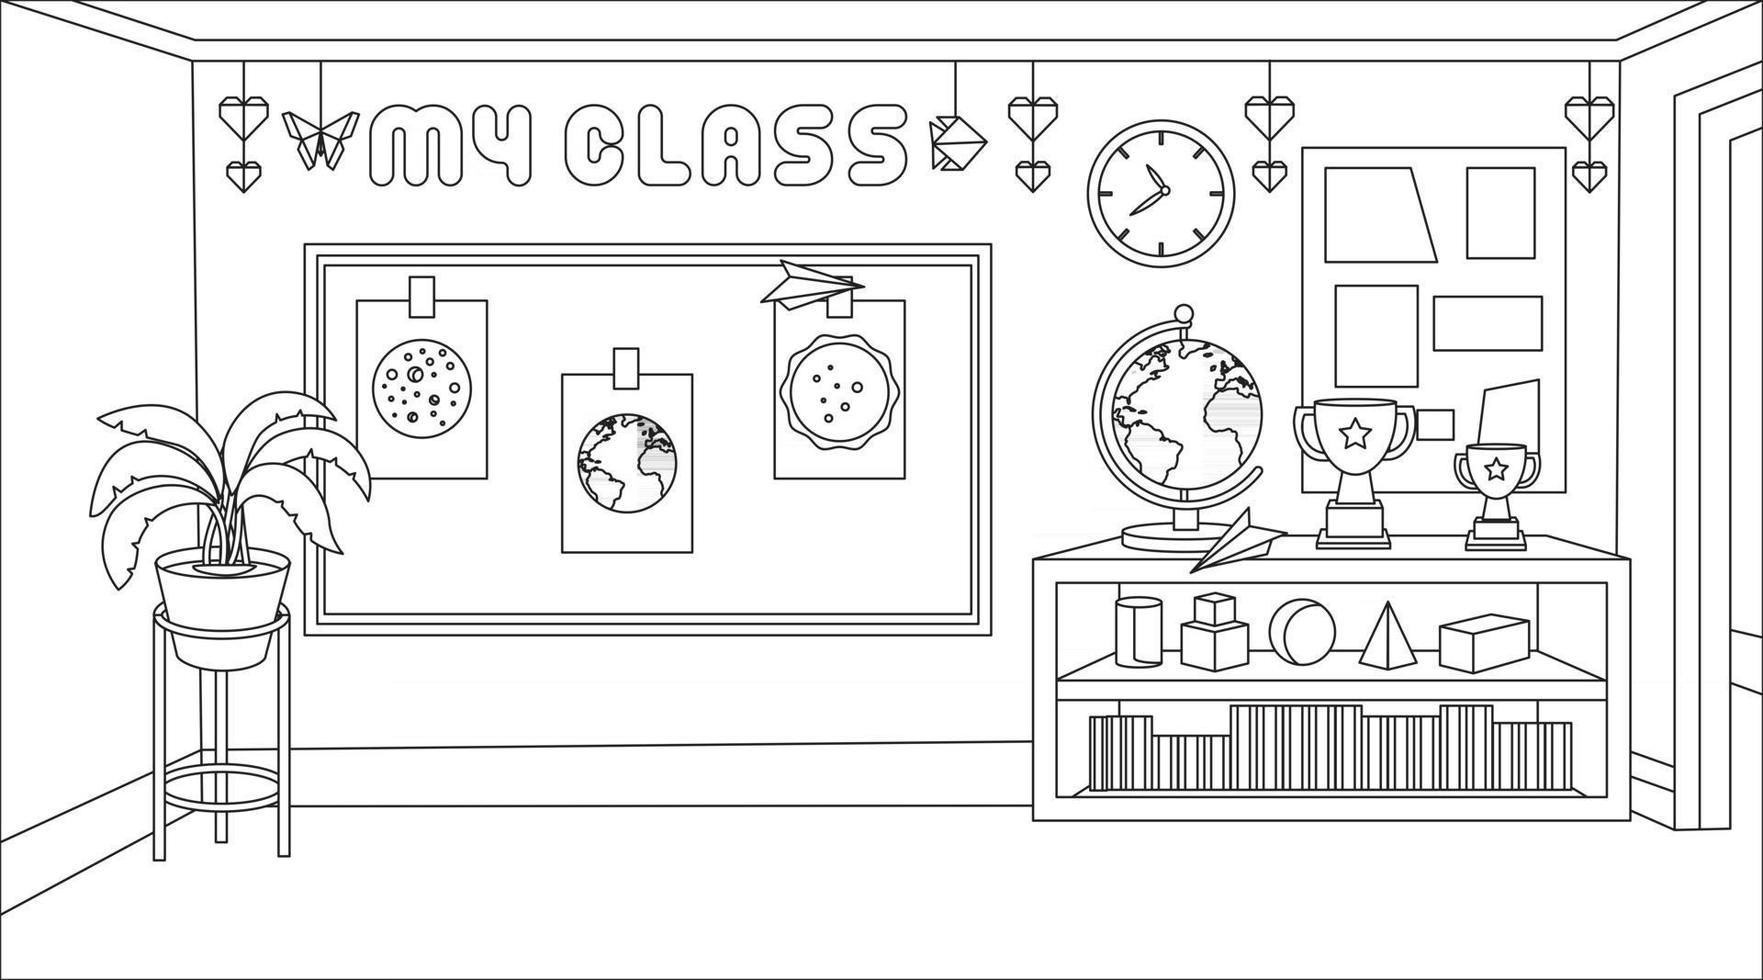 kinderen illustratie, school klas achtergrond met ornament klasse en tool.origami ornament, boek, kubus en decoratieve plant.children kleurplaat illustratie vector